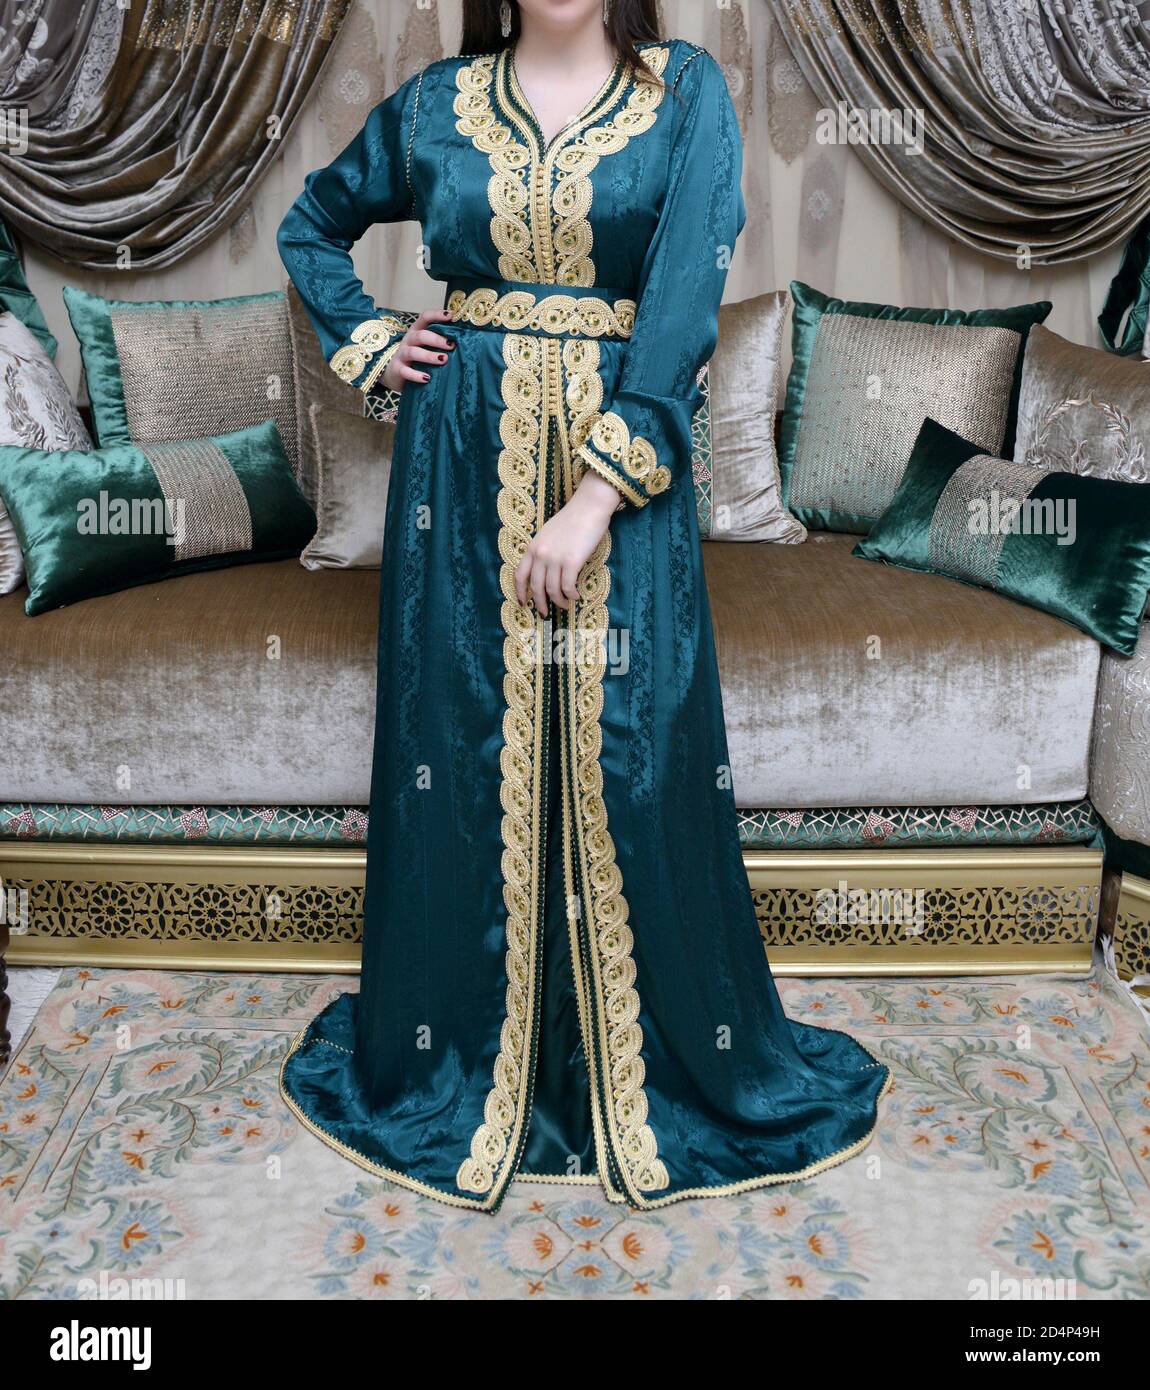 Der marokkanische Kaftan ist eine marokkanische Frauen traditionelle  Tracht. Es gilt als eine der ältesten traditionellen Kleidung der Welt  Stockfotografie - Alamy